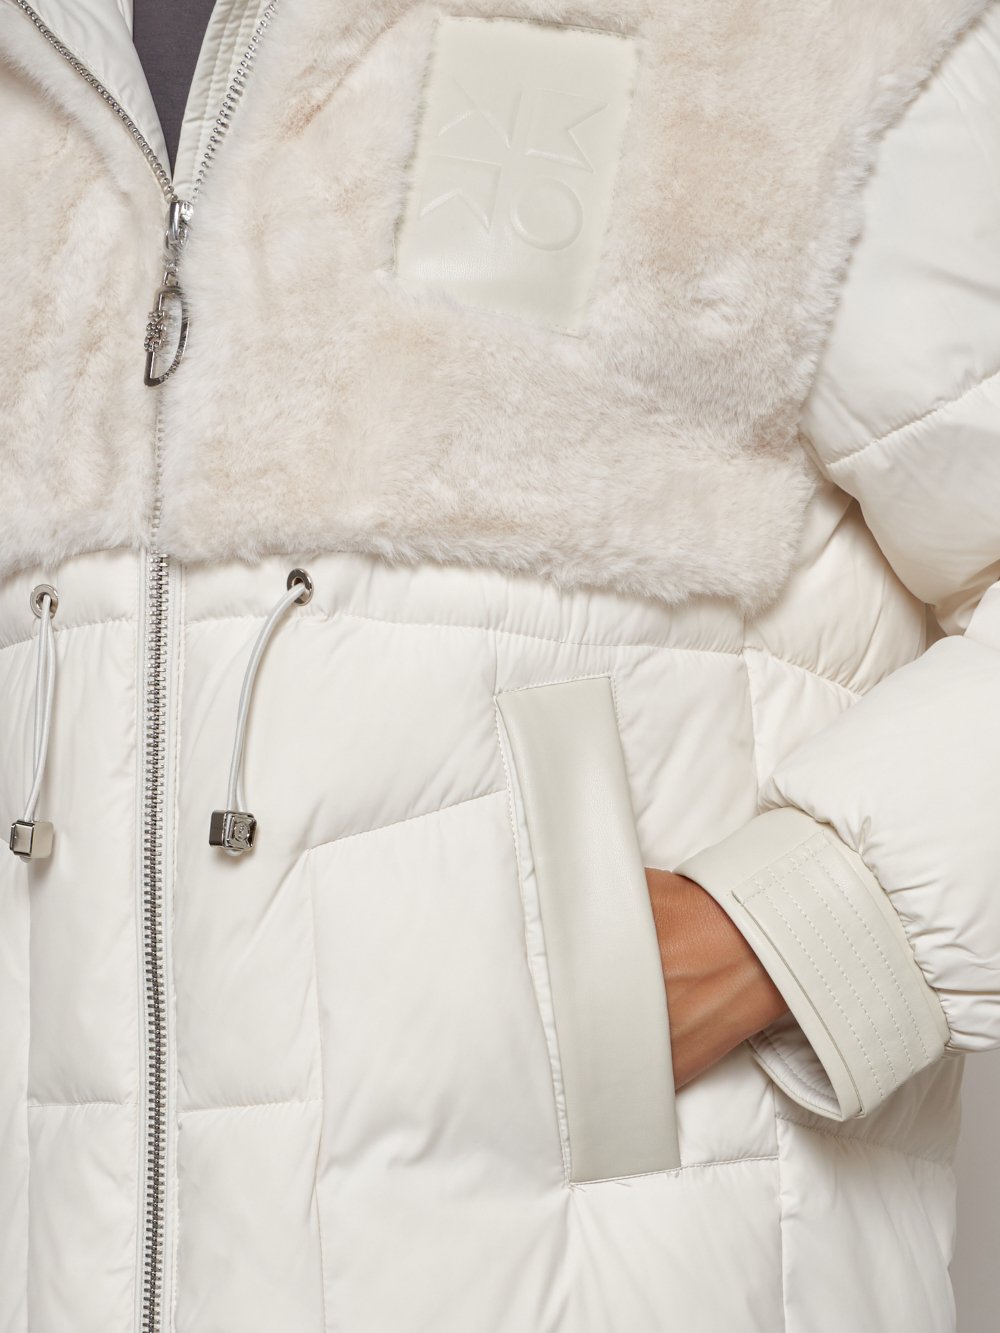 Купить куртку женскую зимнюю оптом от производителя недорого в Москве 133131B 1